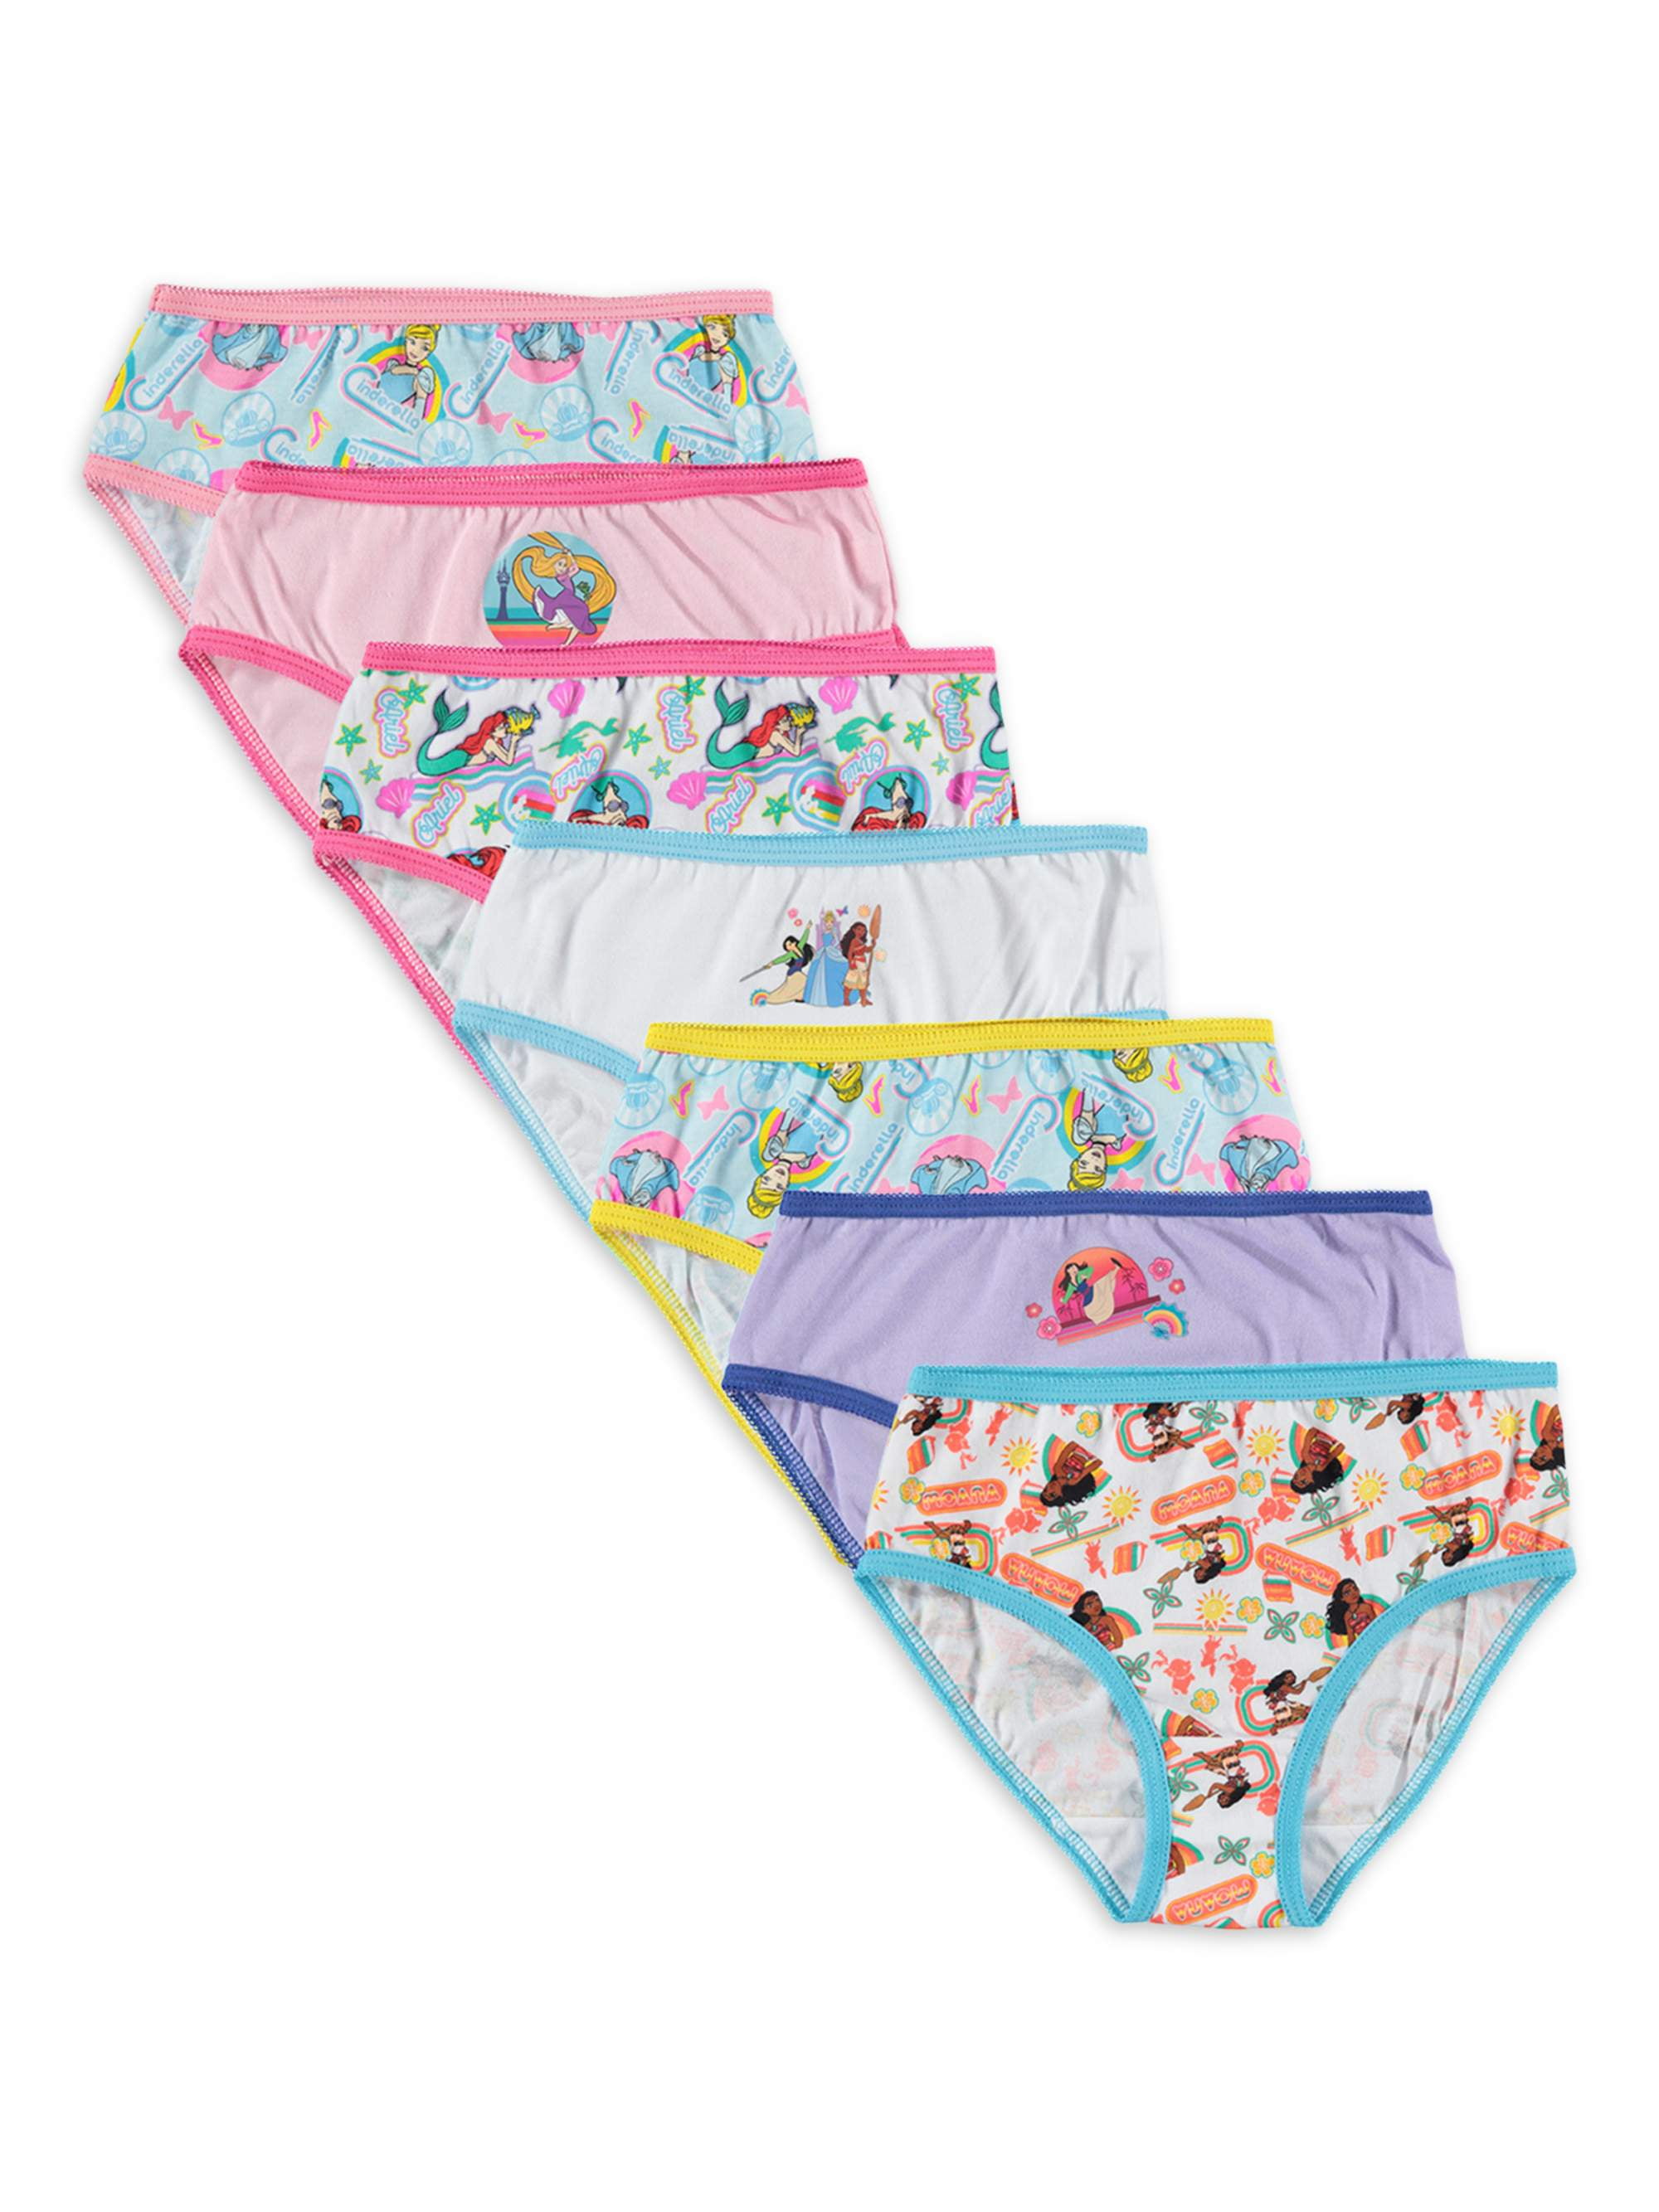 Moana Disney 6 Pack Brief Underwear for Girls 